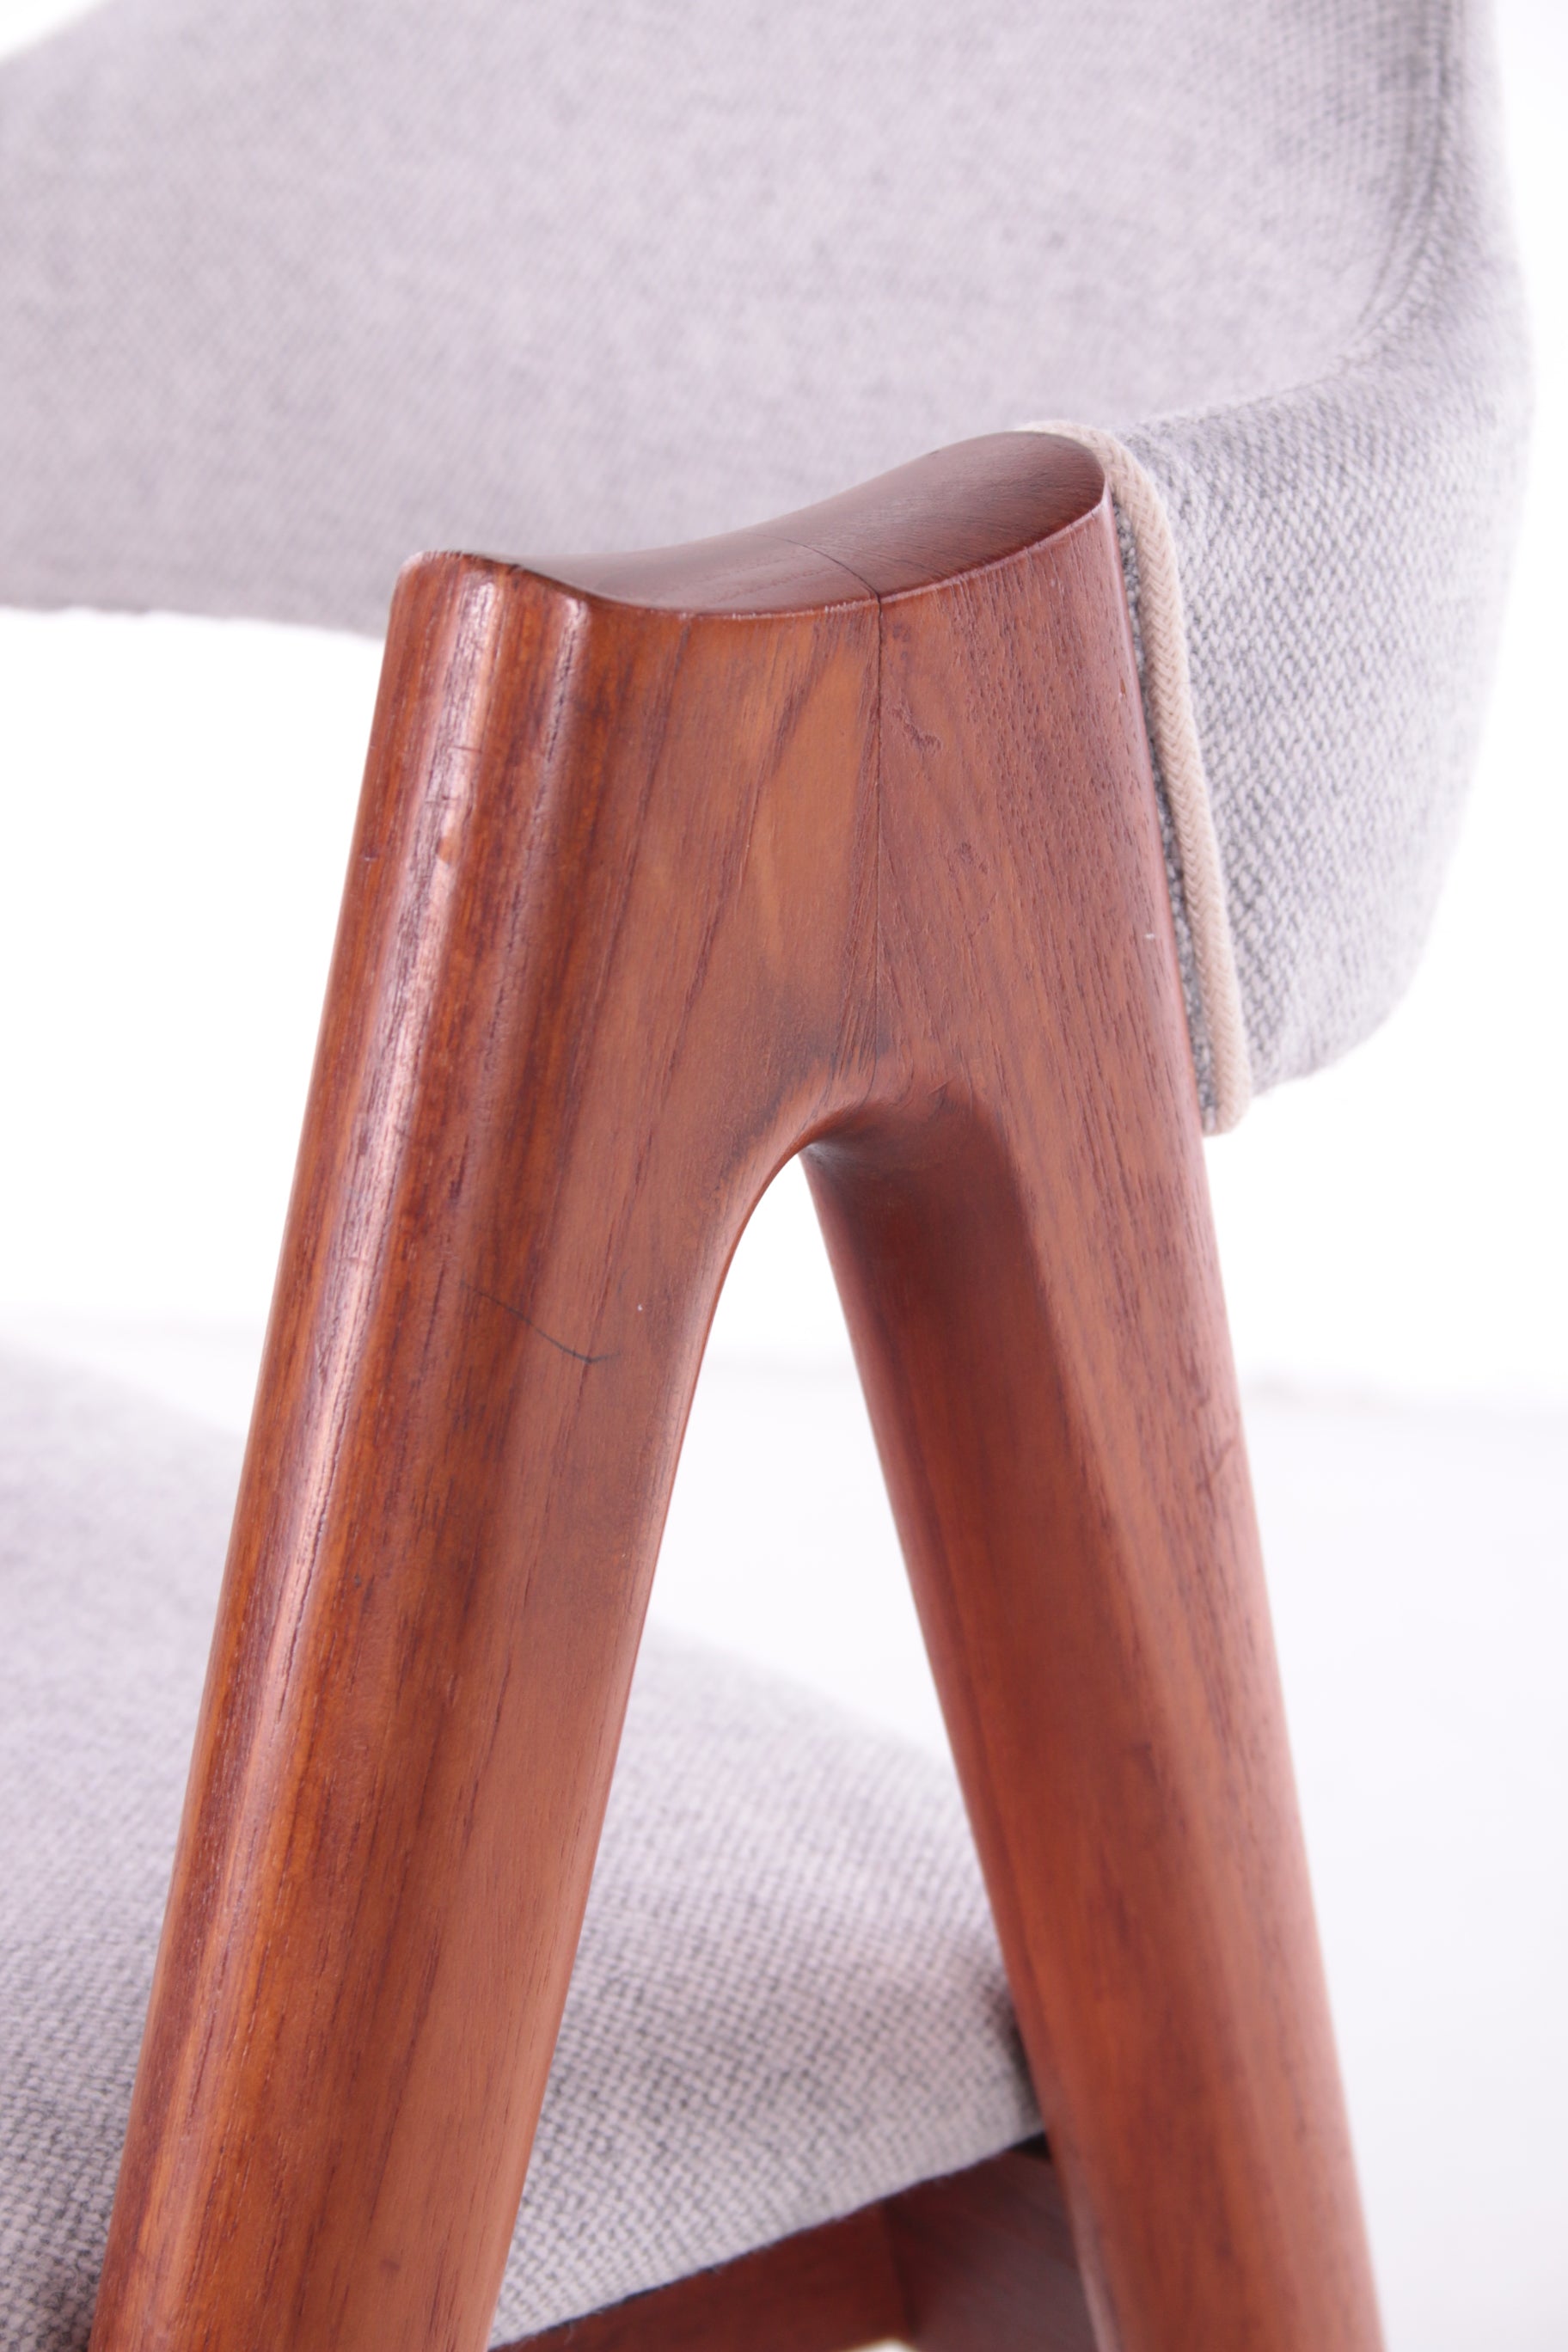 Set van 4 Deens Design eettafelstoelen Model Compas Kai Kristiansen voor sva Mobler close-up houtwerk